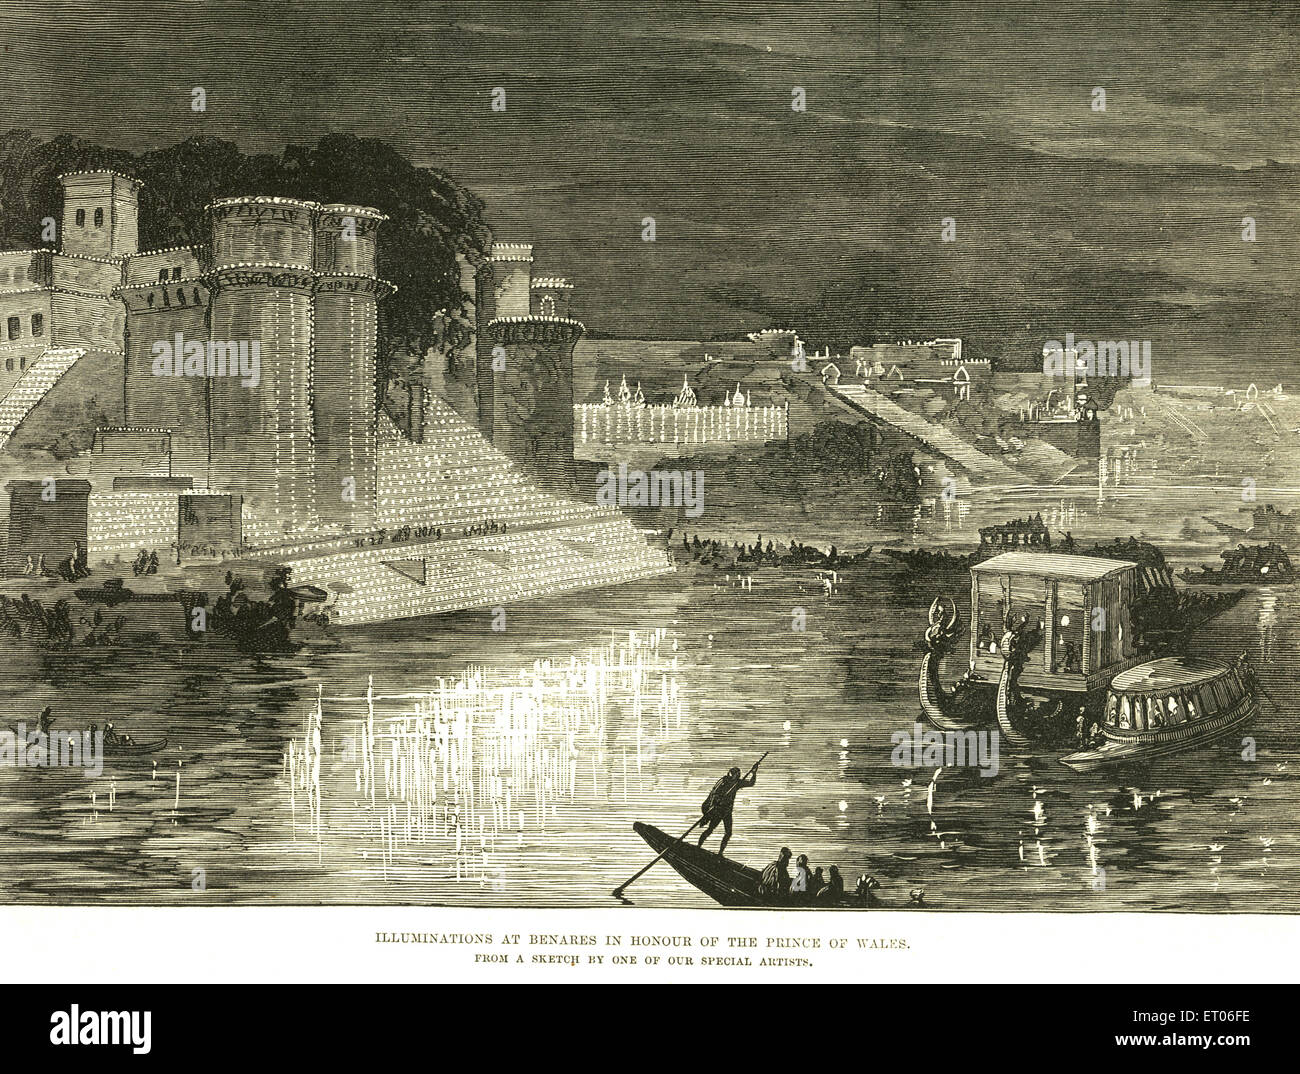 Illuminationen bei Benares Ghats, Varanasi zu Ehren des Prinzen von Wales; Uttar Pradesh; Indien, alter Jahrgangs1800 Stockfoto